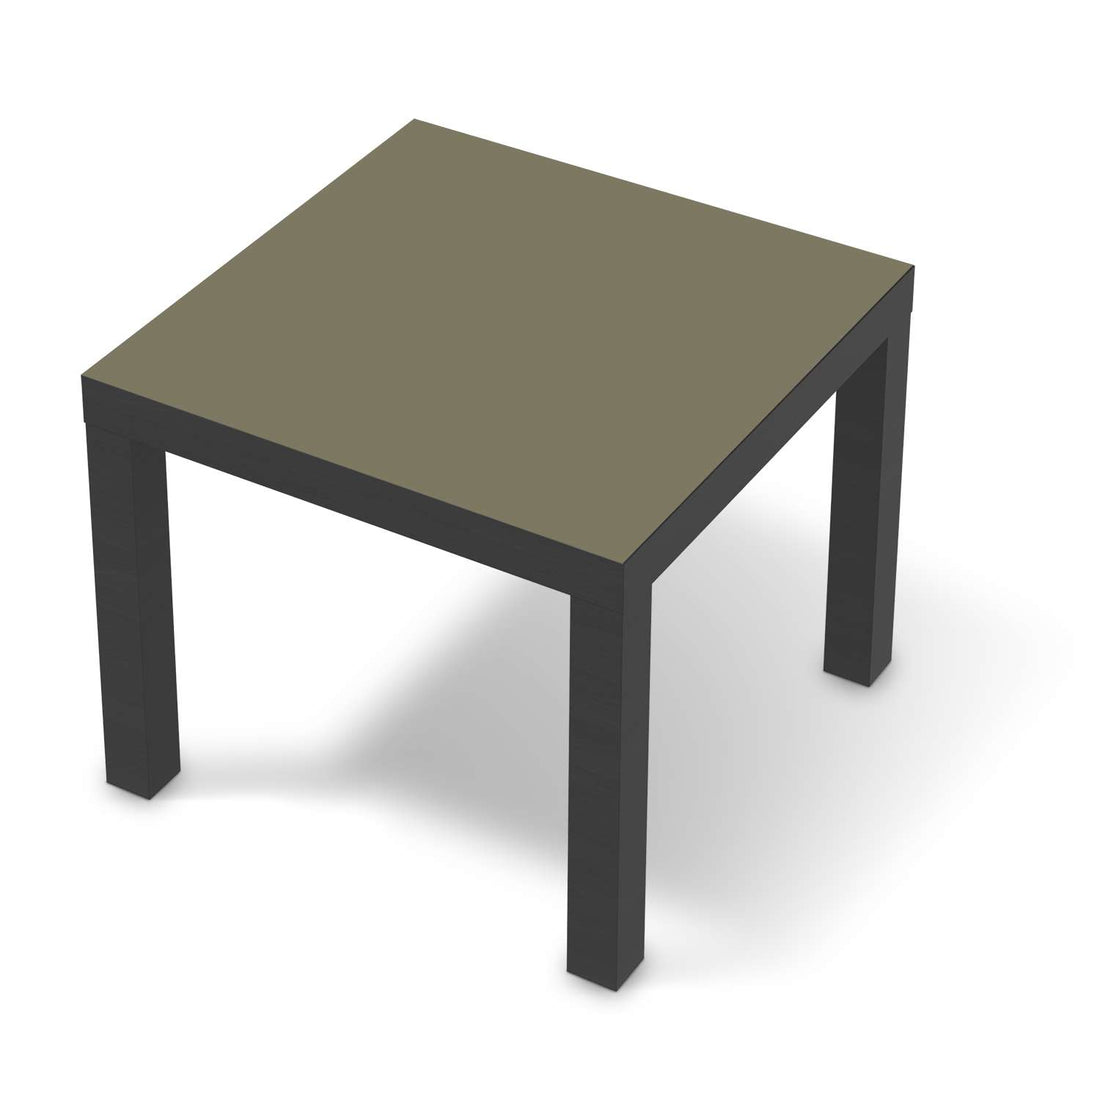 Möbelfolie Braungrau Light - IKEA Lack Tisch 55x55 cm - schwarz